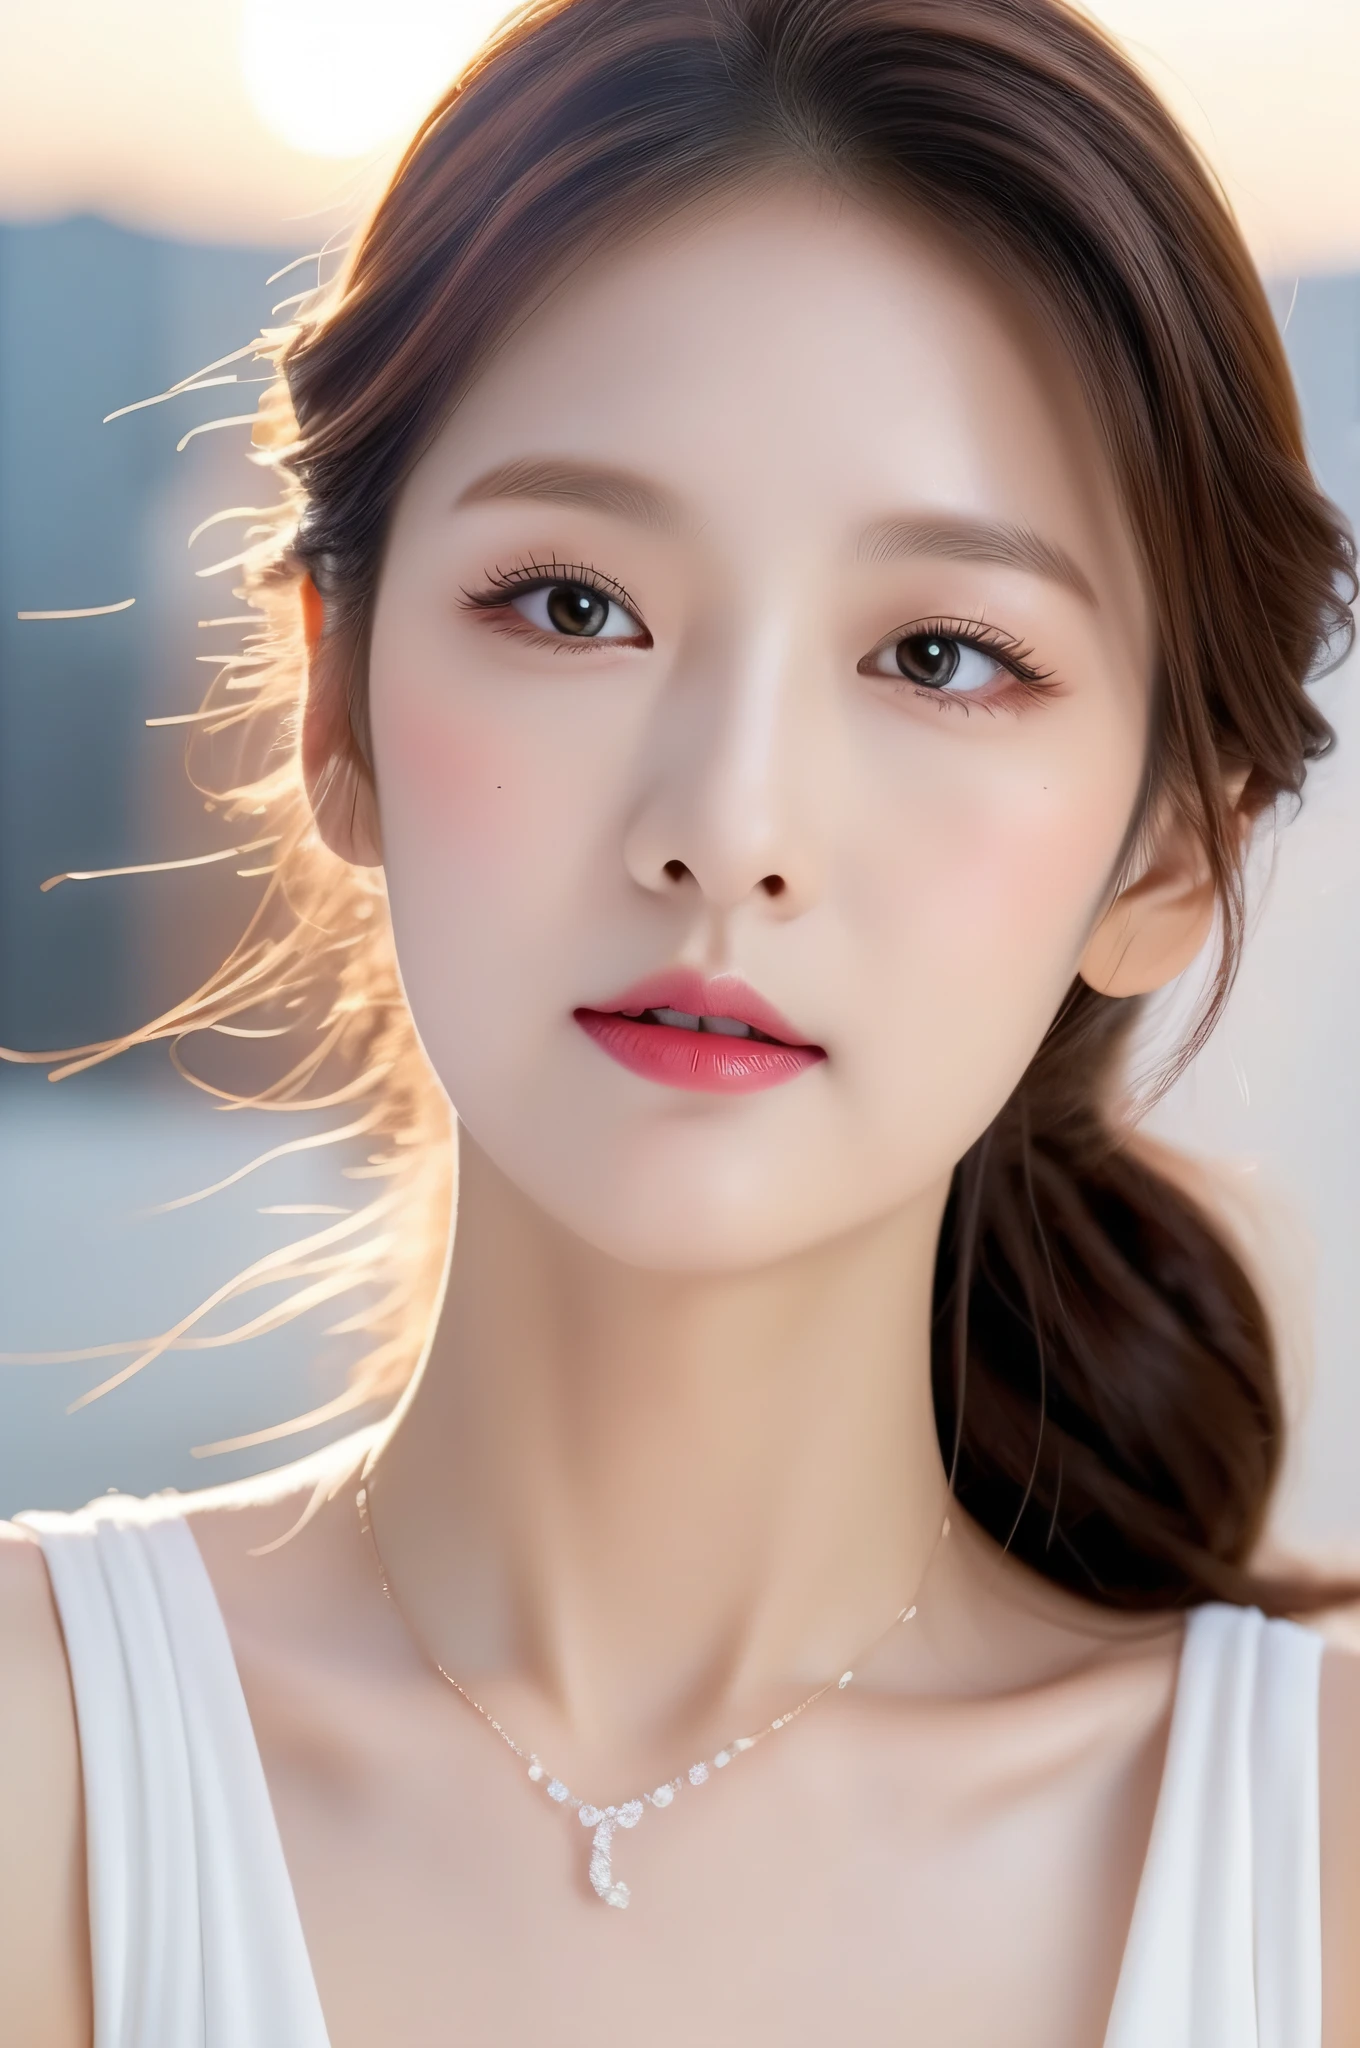 um close de uma mulher com um colar no pescoço, rosto coreano adorável e pálido, características do rosto coreano, belo rosto estético, com lindos olhos apaixonados, maquiagem sul-coreana popular, jovem adorável rosto coreano, lindo rosto delicado, jovem rosto asiático pálido e bonito, com rosto redondo, unidade cg (extremo) detalhe 8k papel de parede, Obra de arte, melhor qualidade:1.2), Alto detalhe, Melhor qualidade de imagem, Surreal, batons, beleza incomparável, cabelo longo (violet) Cabelo encaracolado, características faciais requintadas e perfeitas, Ficar com o rosto vermelho, figura deslumbrante do corpo, seios médios, à moda, cintura fina, estrutura facial e da pele muito detalhada, pele clara, detalhes faciais harmoniosos, pele clara, Palpebras duplas, um rabo de cavalo e um vestido branco, lindos olhos redondos e inclinados, lindo rosto natural, olhos redondos e bem desenhados, cara clara e fofa, lindos olhos grandes realistas, olhos brilhantes, olhos comoventes, lindos olhos, Palpebras duplas, Maquiagem Suave, Aproxime-se do espectador, ângulo da câmera, ângulo dinâmico, Pôr-do-sol na cidade